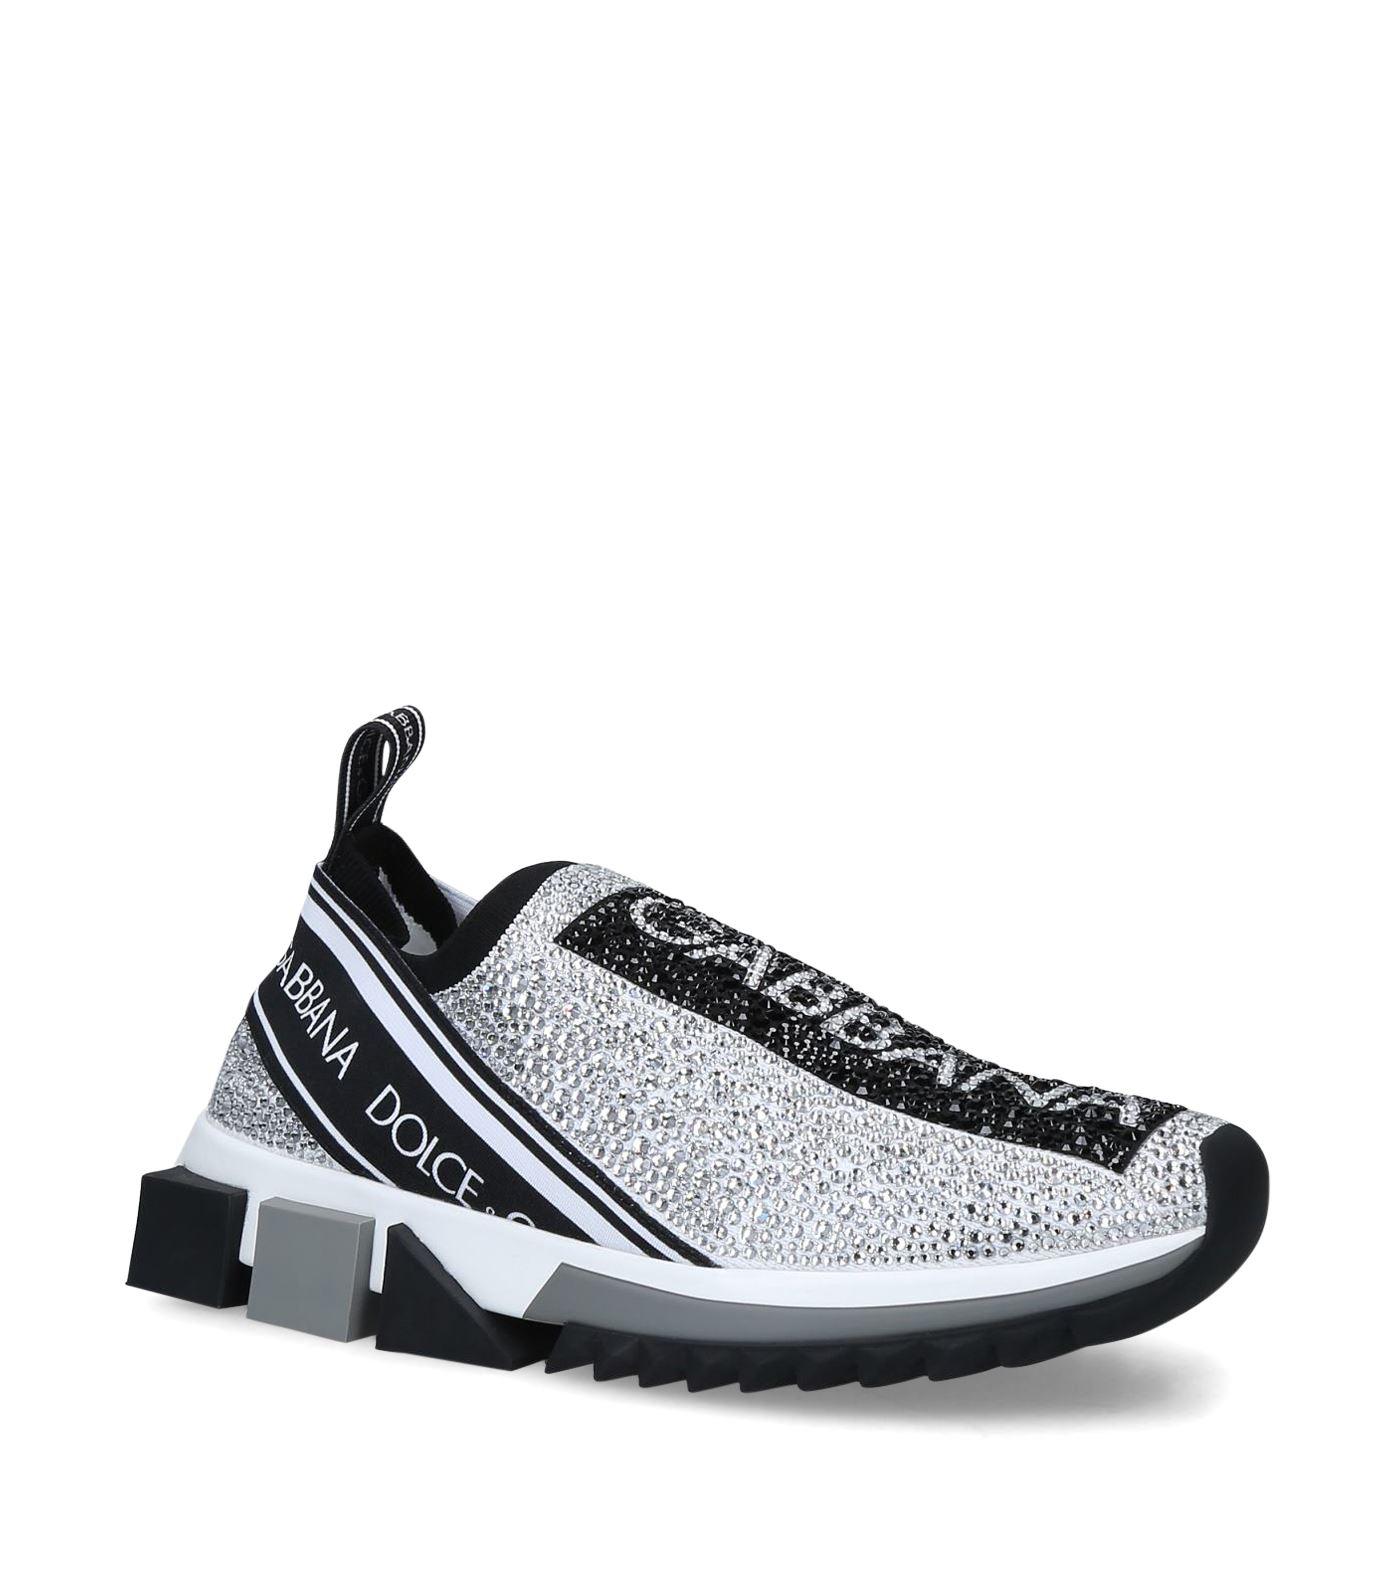 Dolce & Gabbana Rubber Sorrento Slip-on Sneakers in White (Black ...